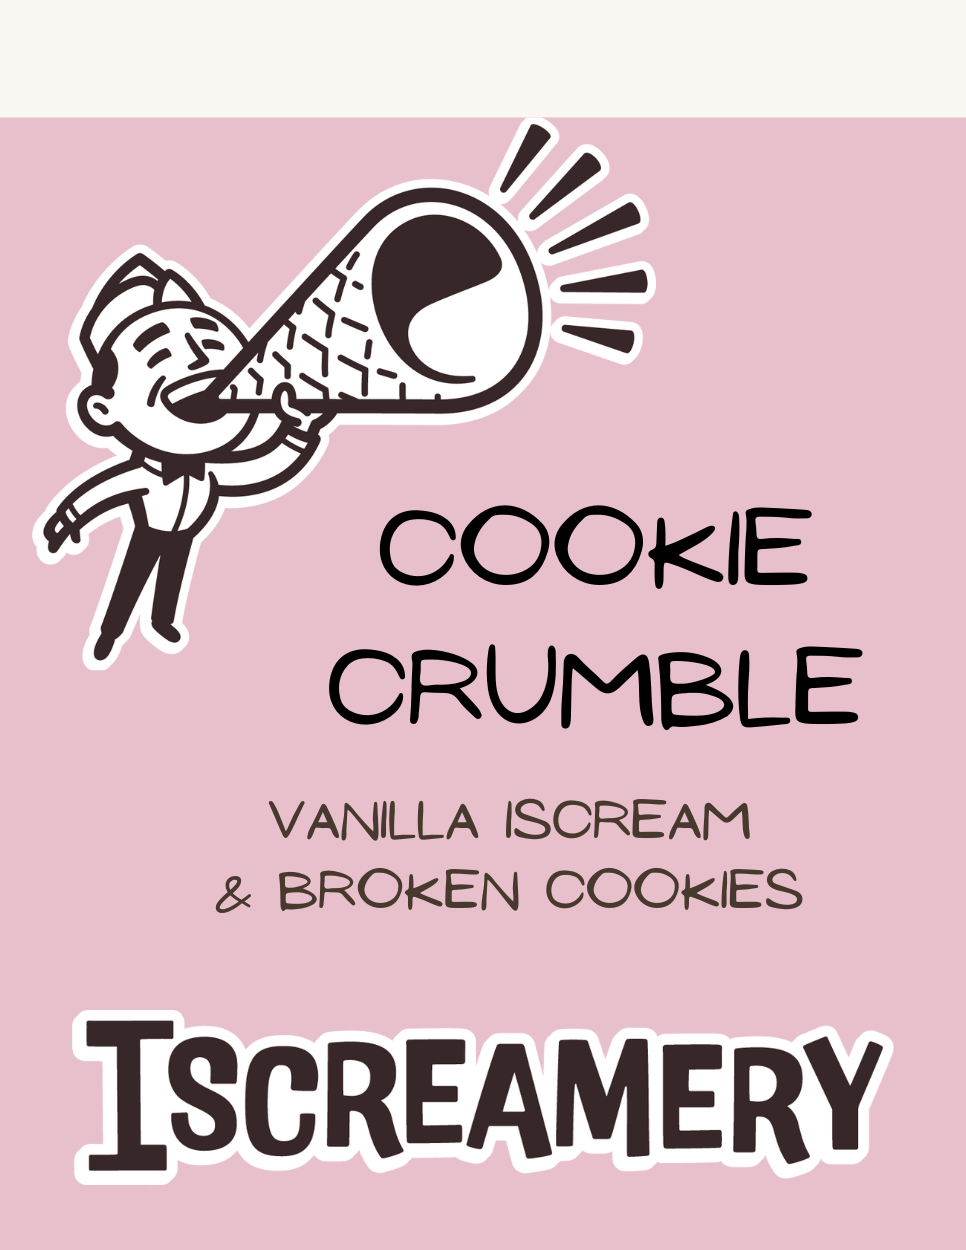 Ice Cream Flavors. Iscreamery (4).png